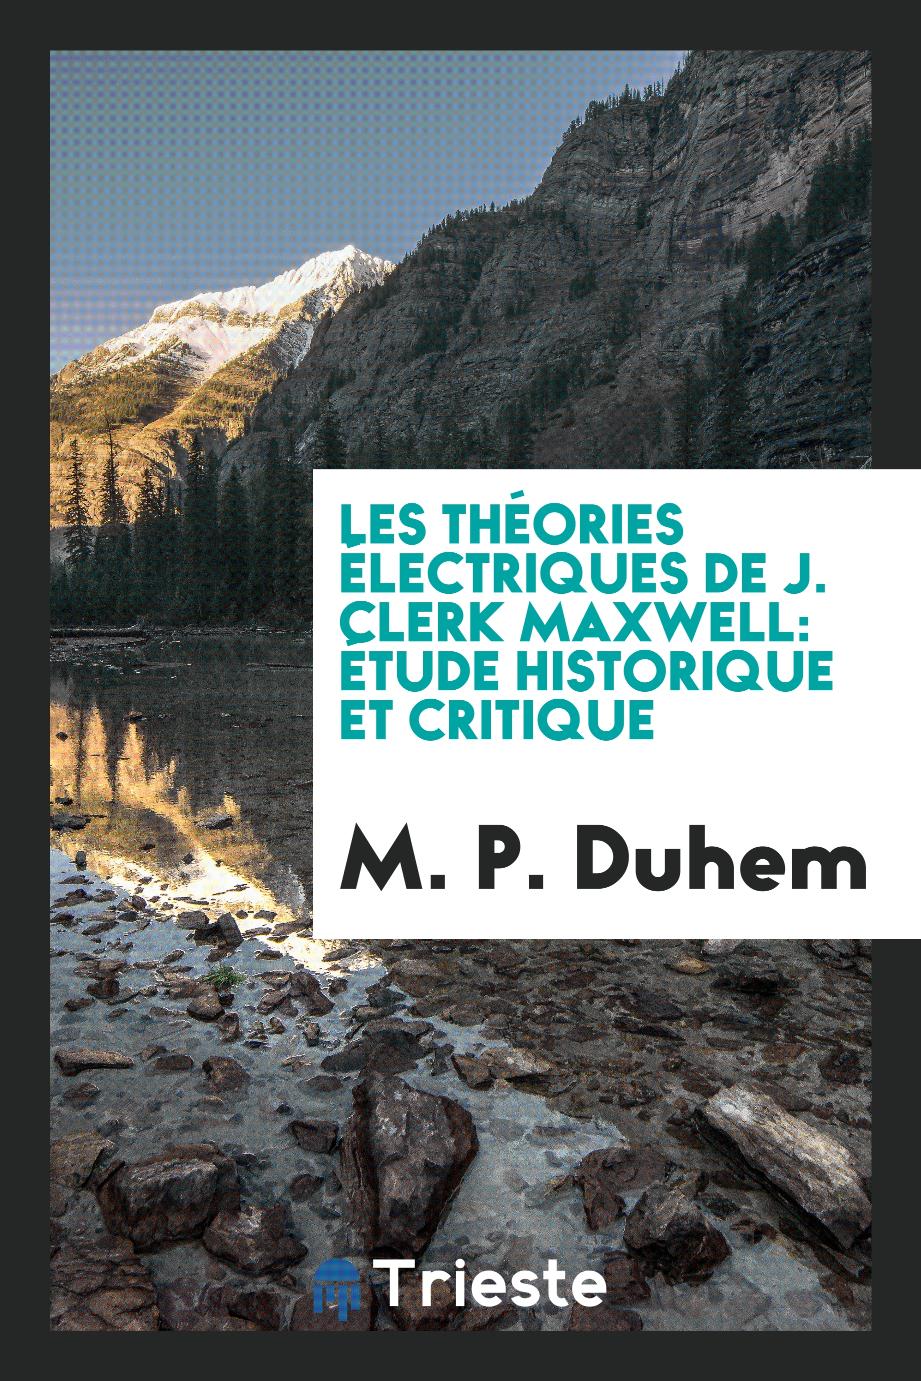 M. P. Duhem - Les théories électriques de J. Clerk Maxwell: étude historique et critique